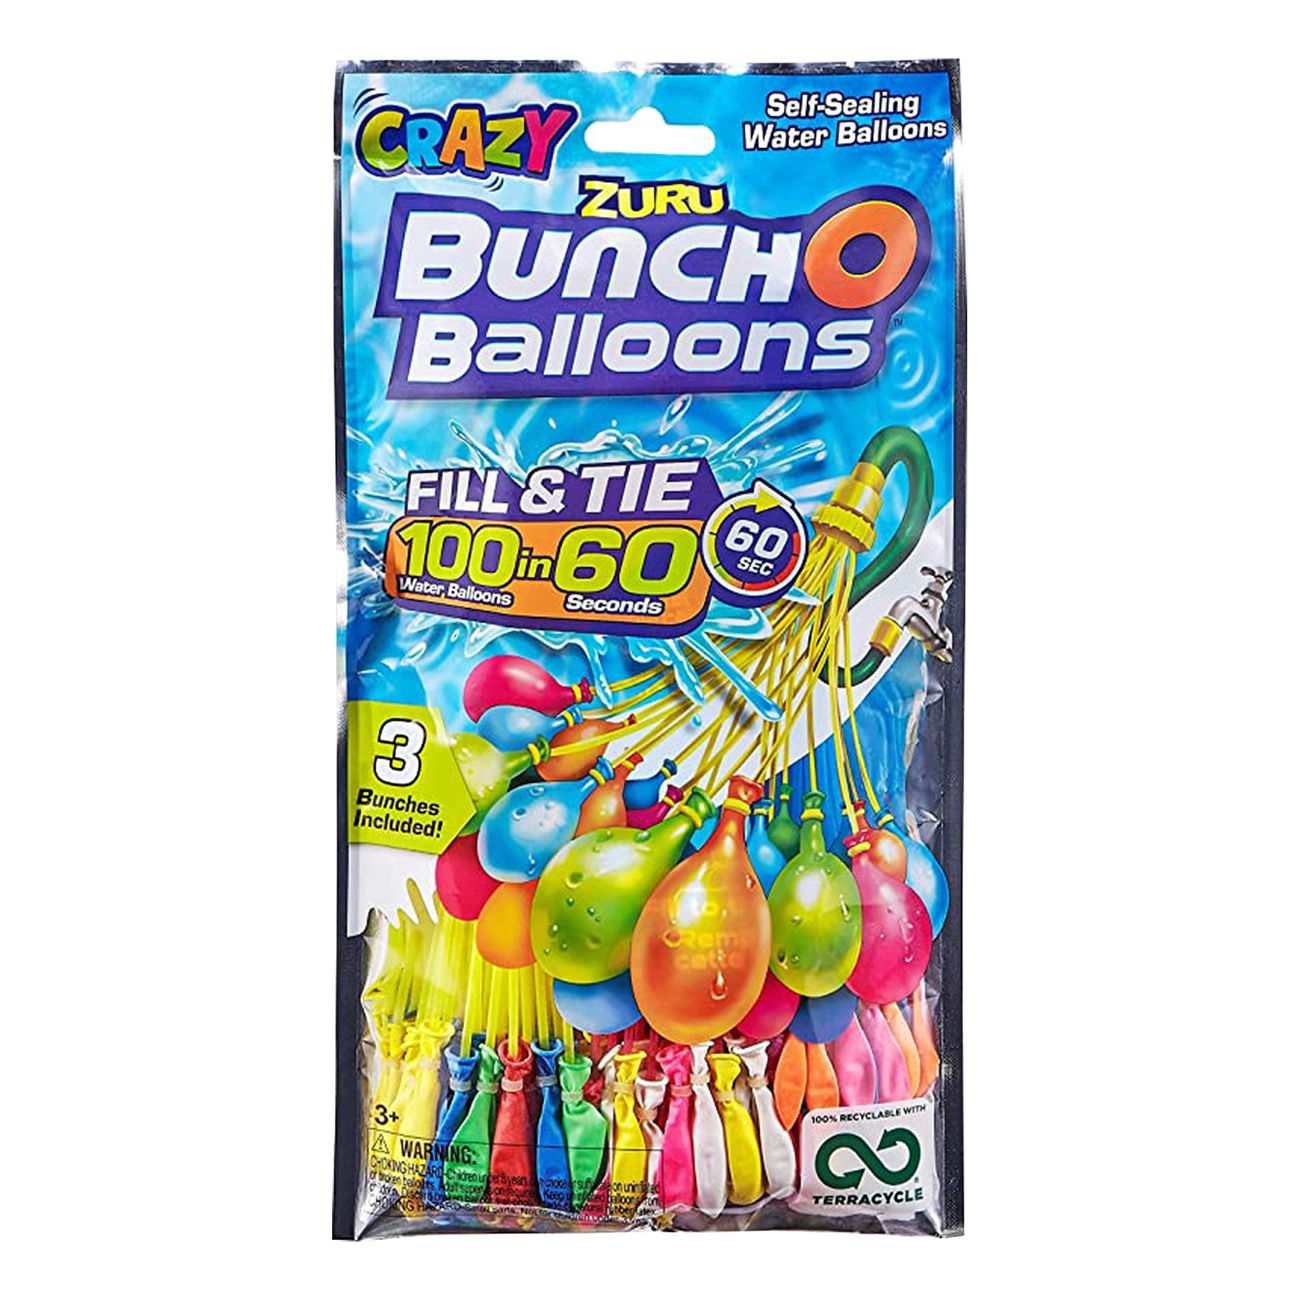 bunch-o-balloons-vattenballonger-86286-1